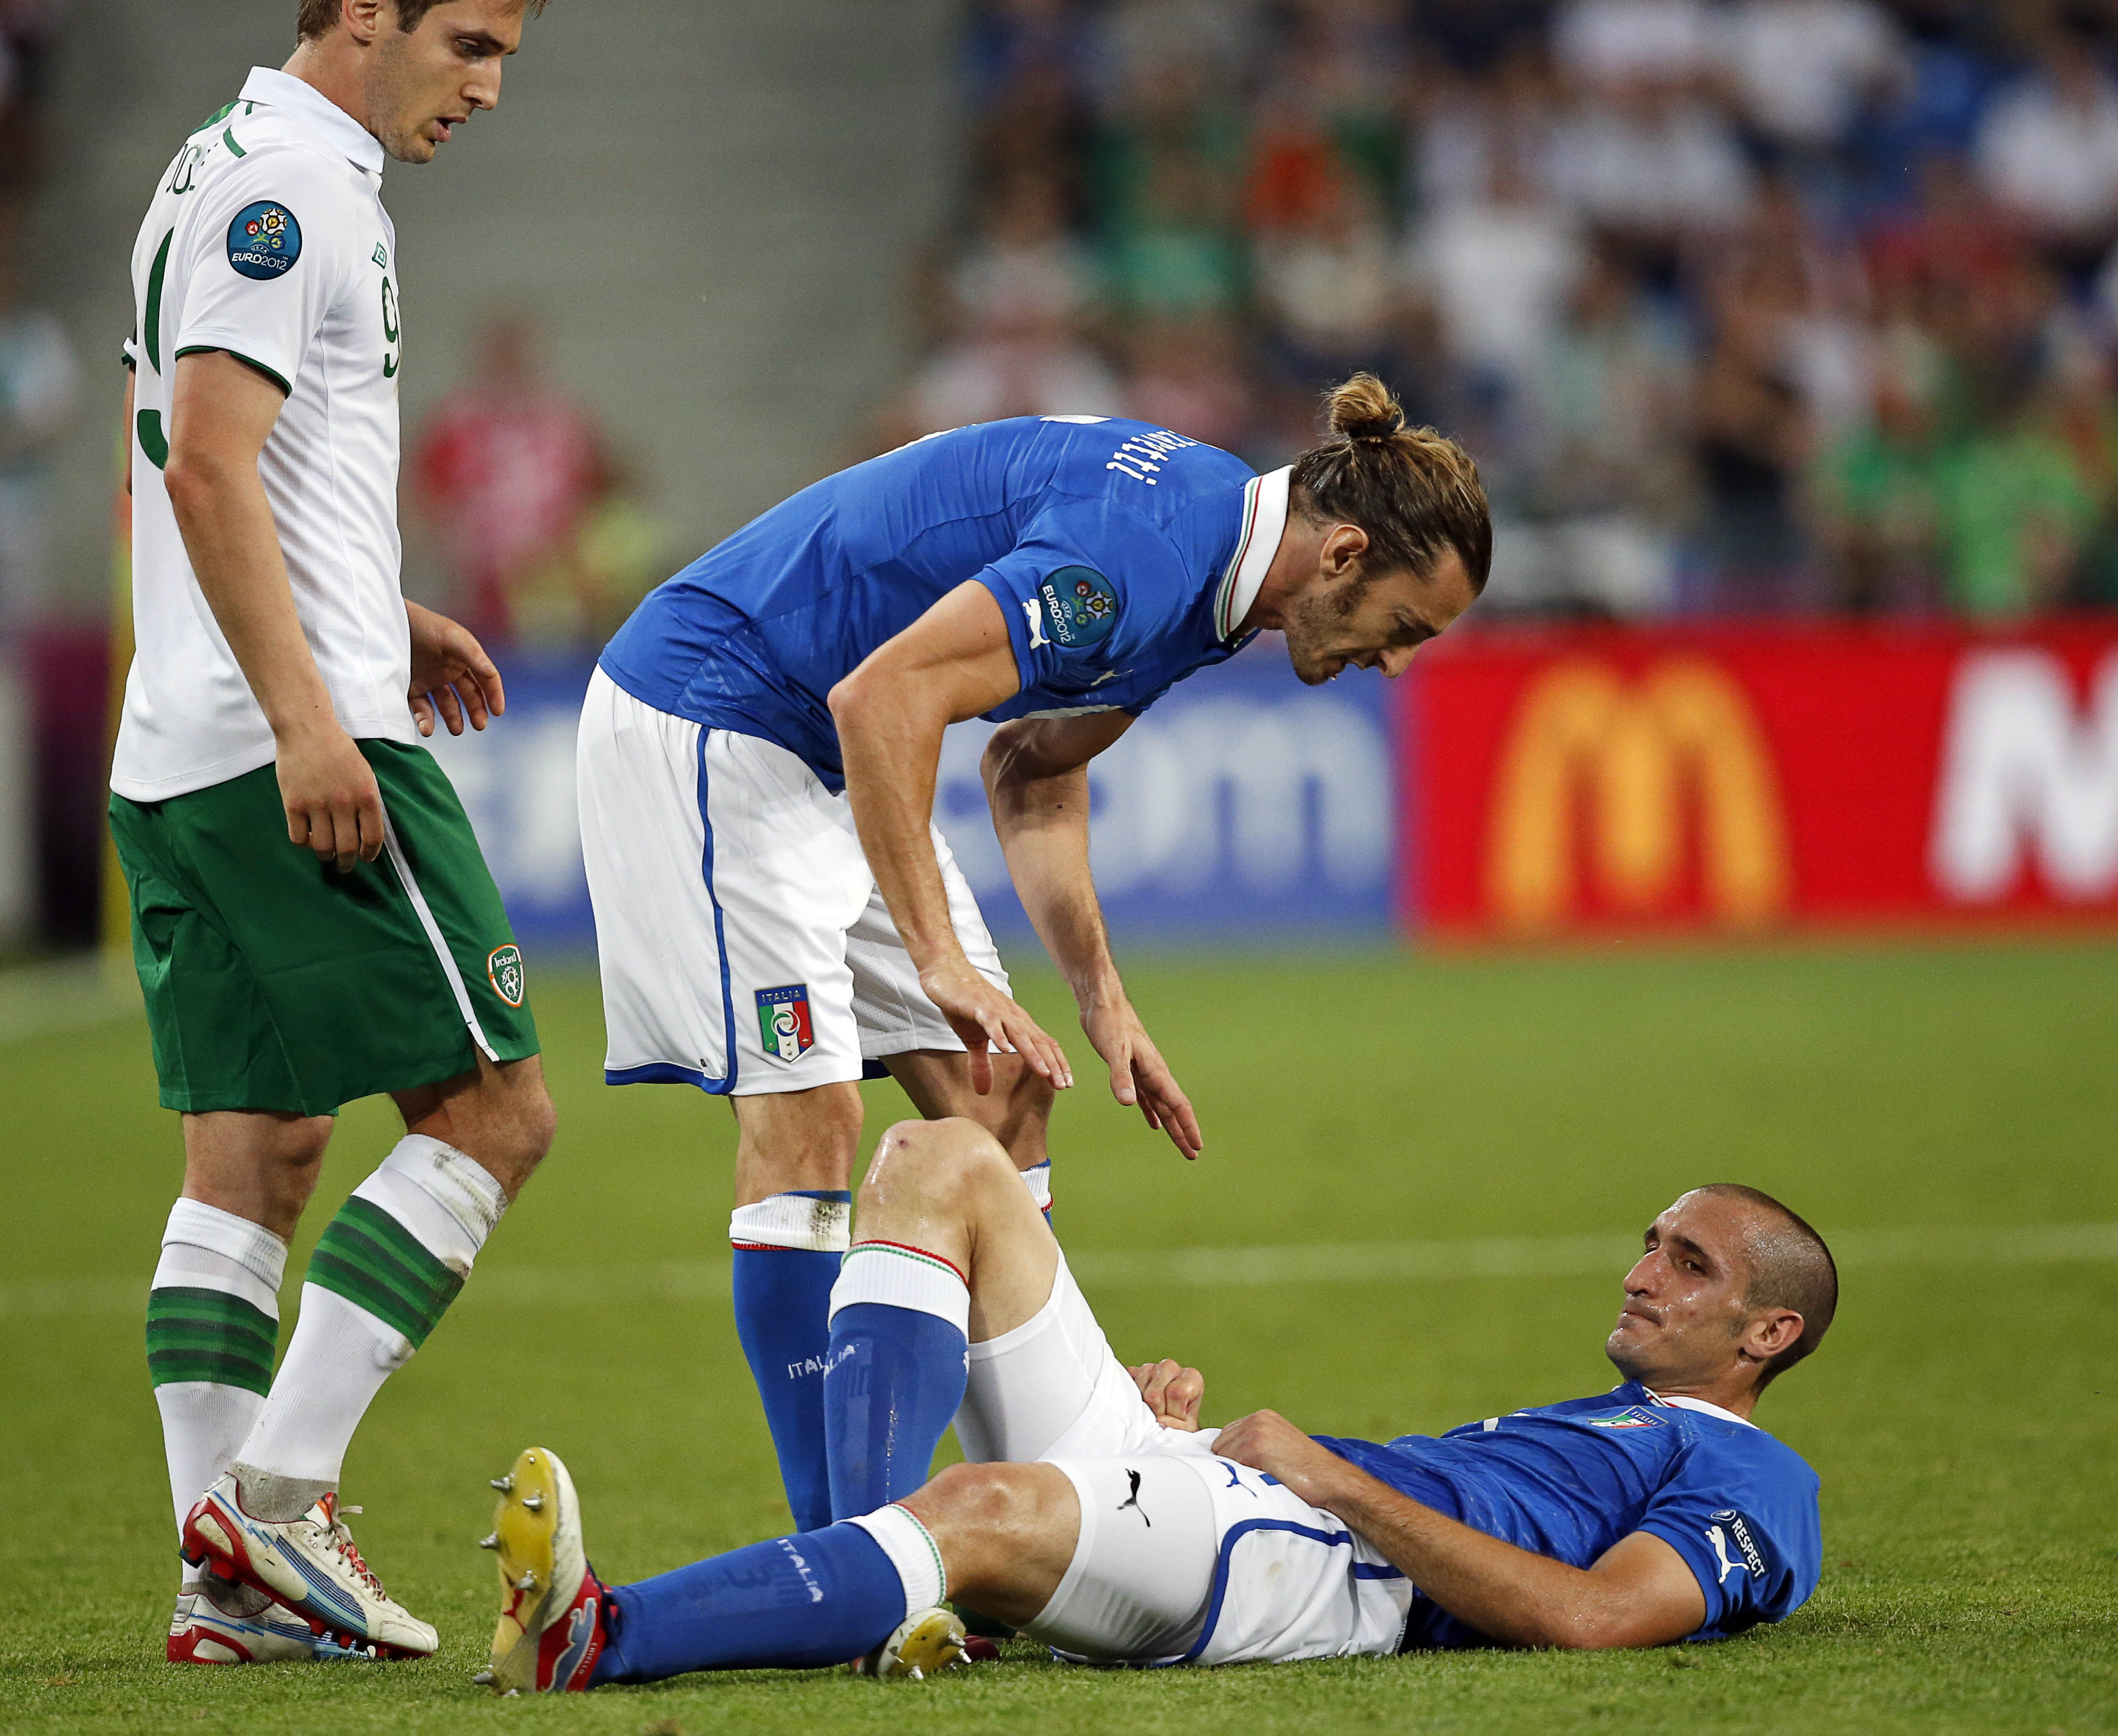 Han skadade låret i den sista gruppspelsmatchen mot Irland och de första rapporterna sa att han skulle bli borta resten av EM.